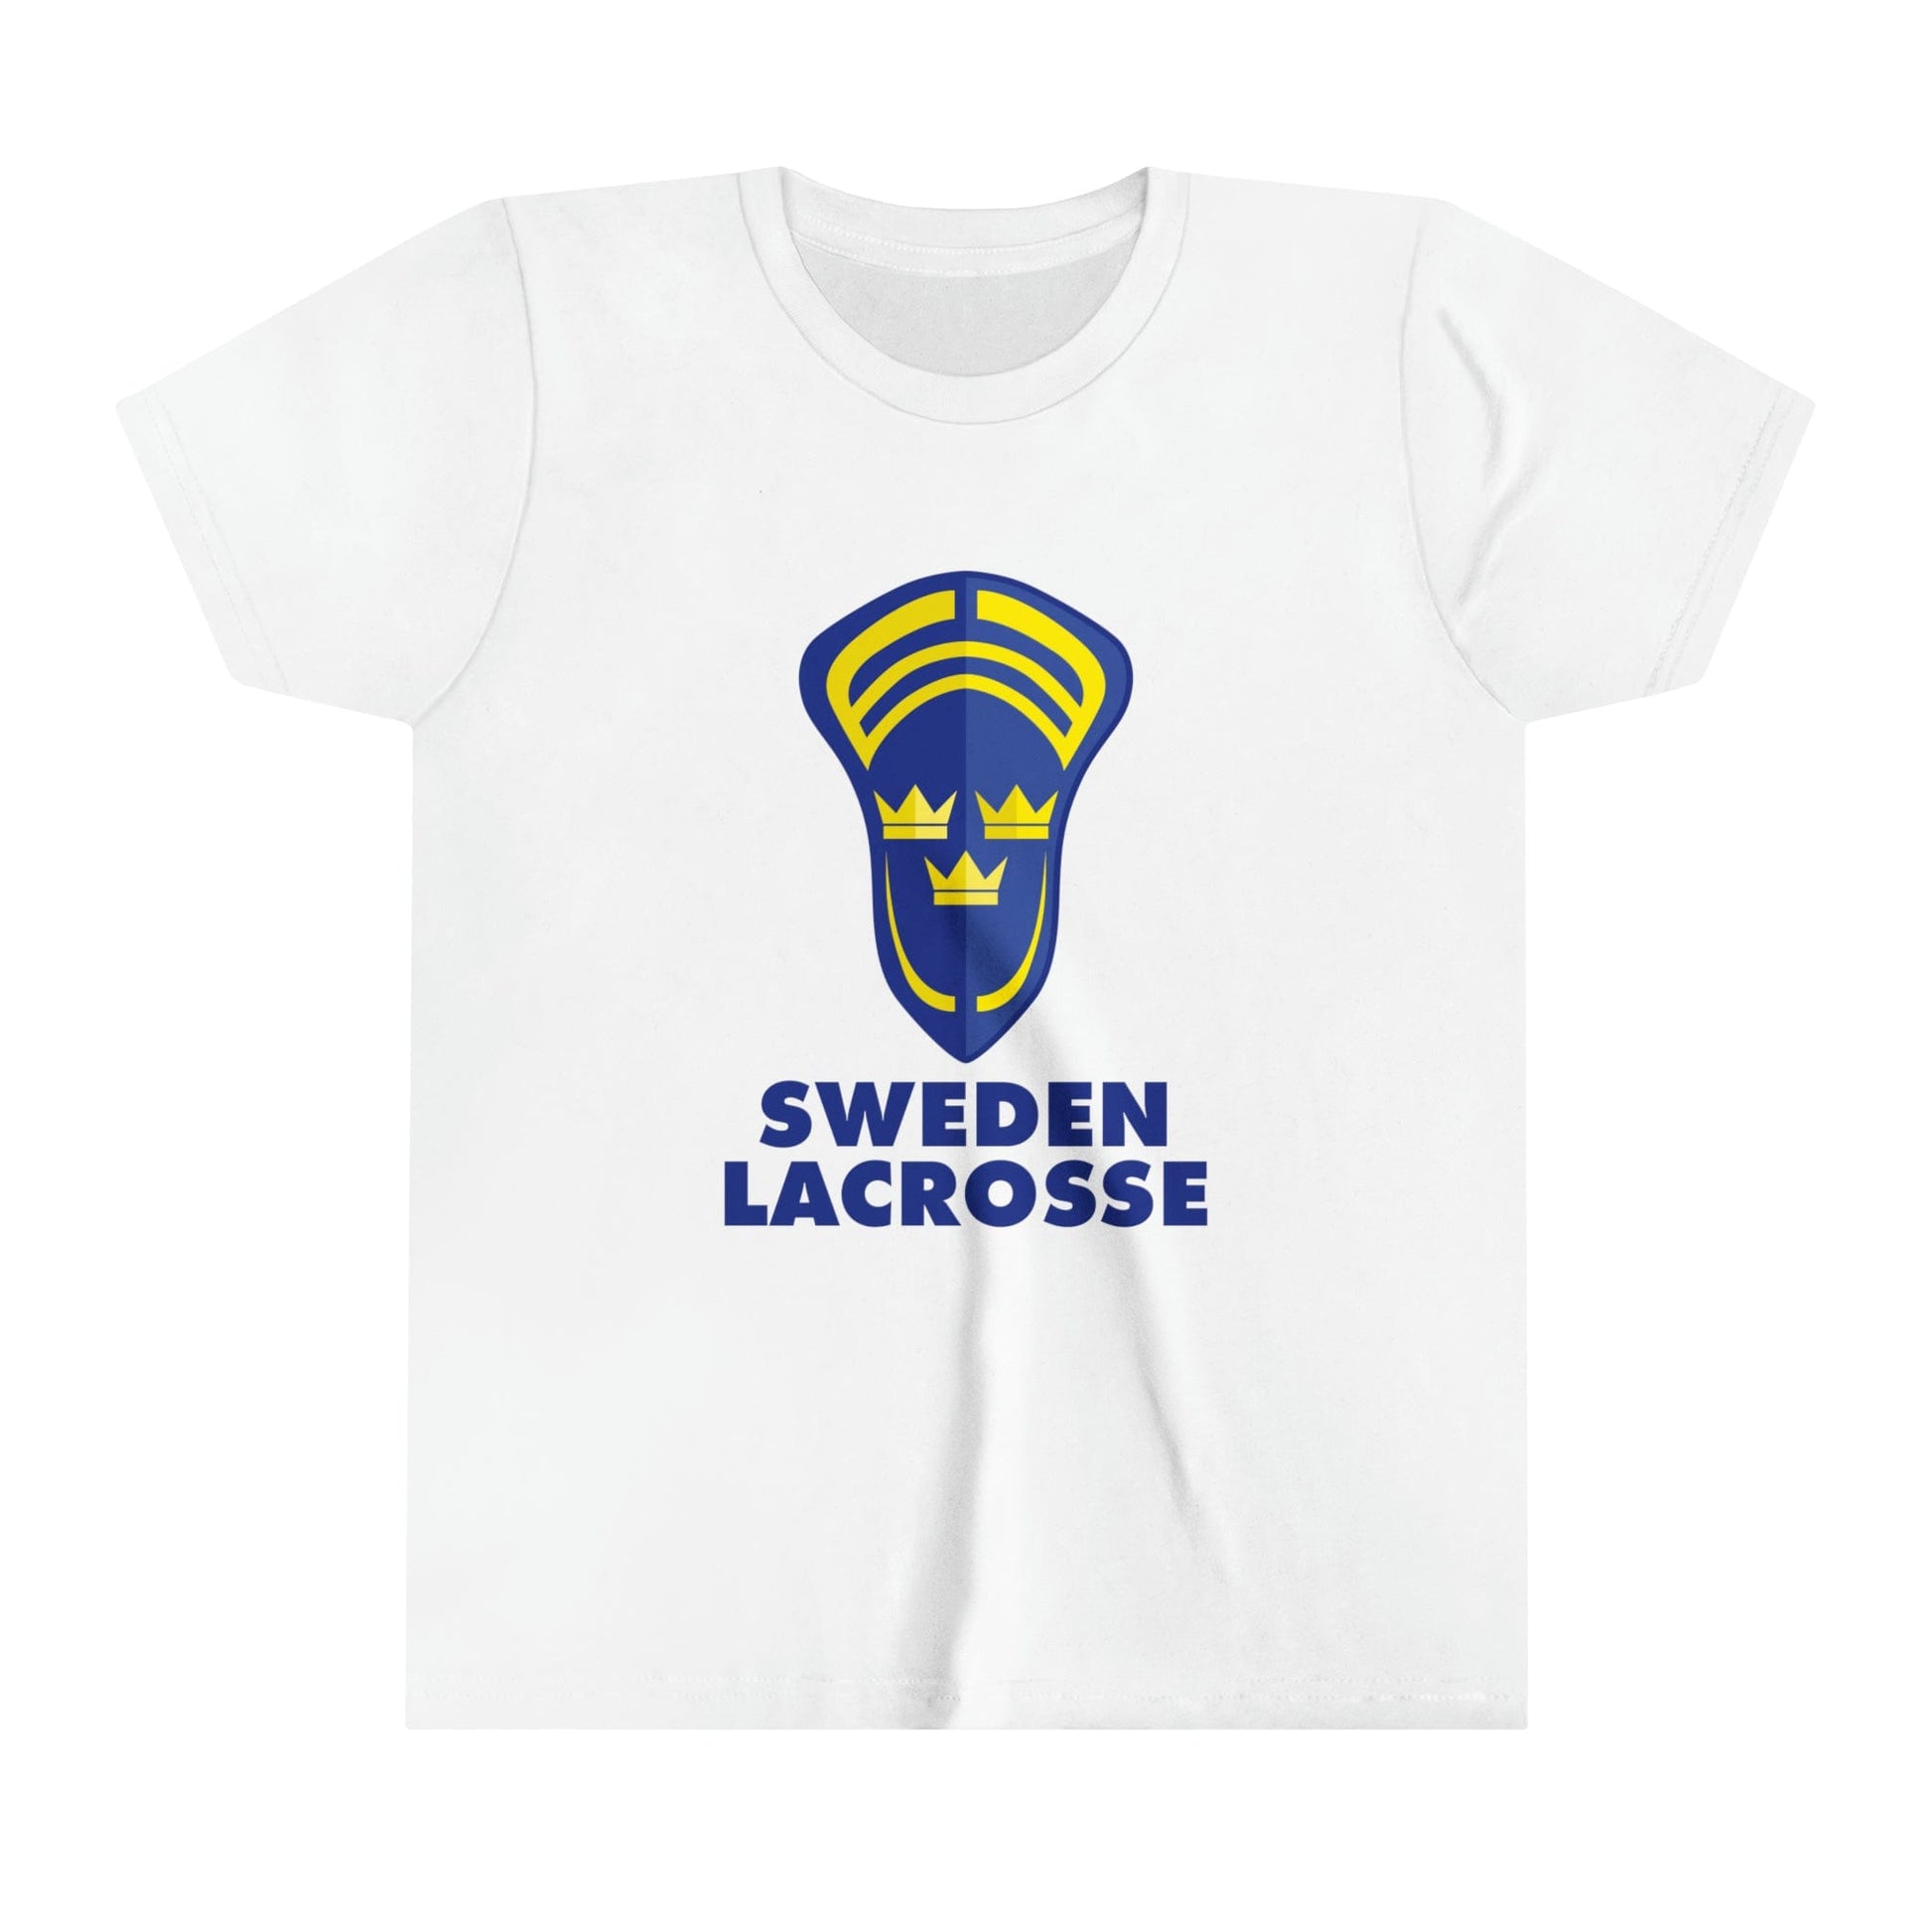 Sweden Lacrosse Lifestyle T-Shirt Signature Lacrosse